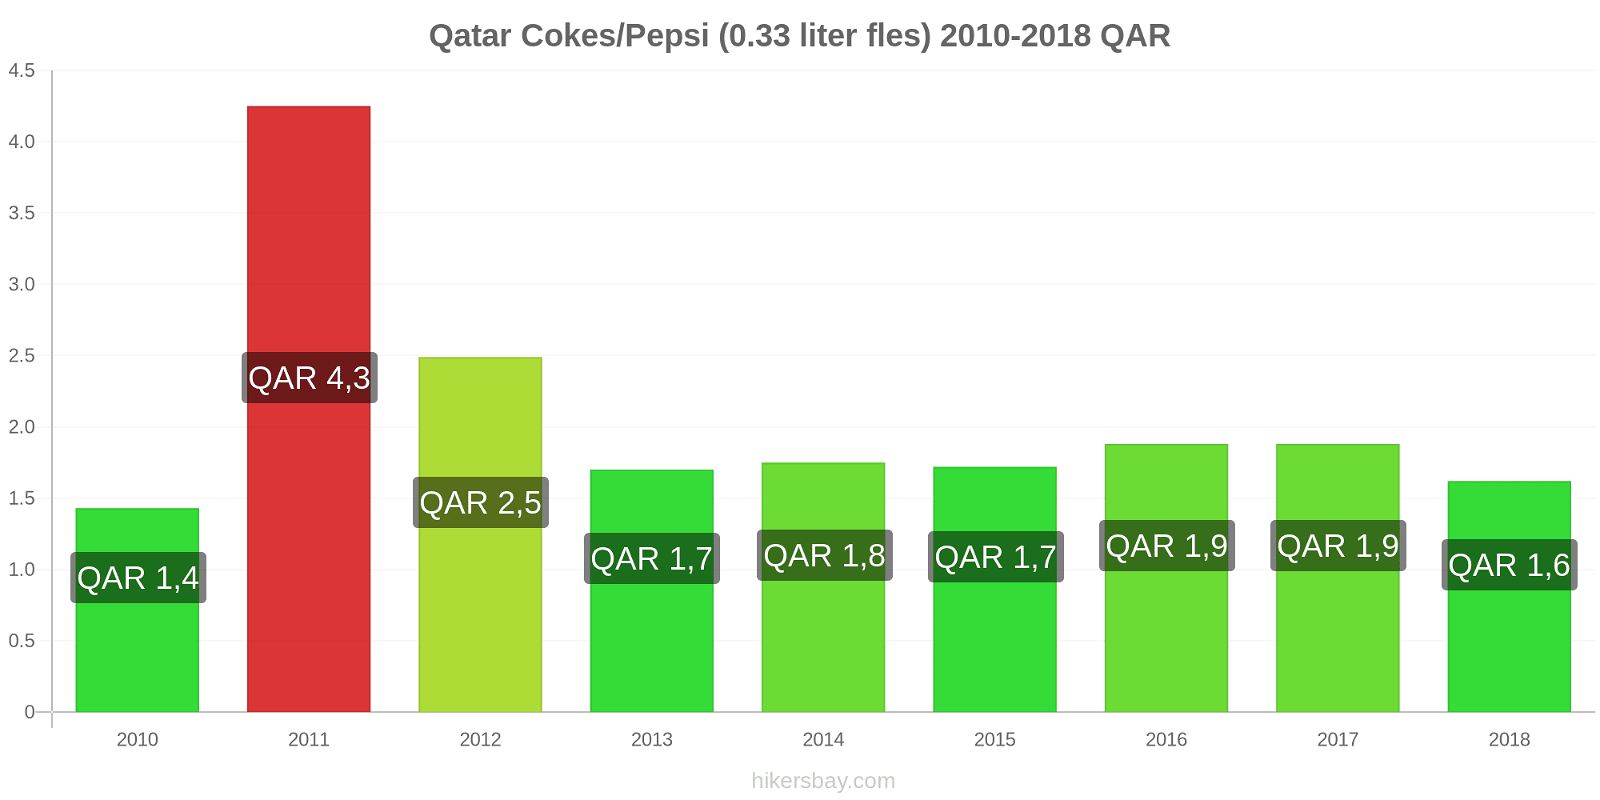 Qatar prijswijzigingen Coca-Cola/Pepsi (0.33 liter fles) hikersbay.com